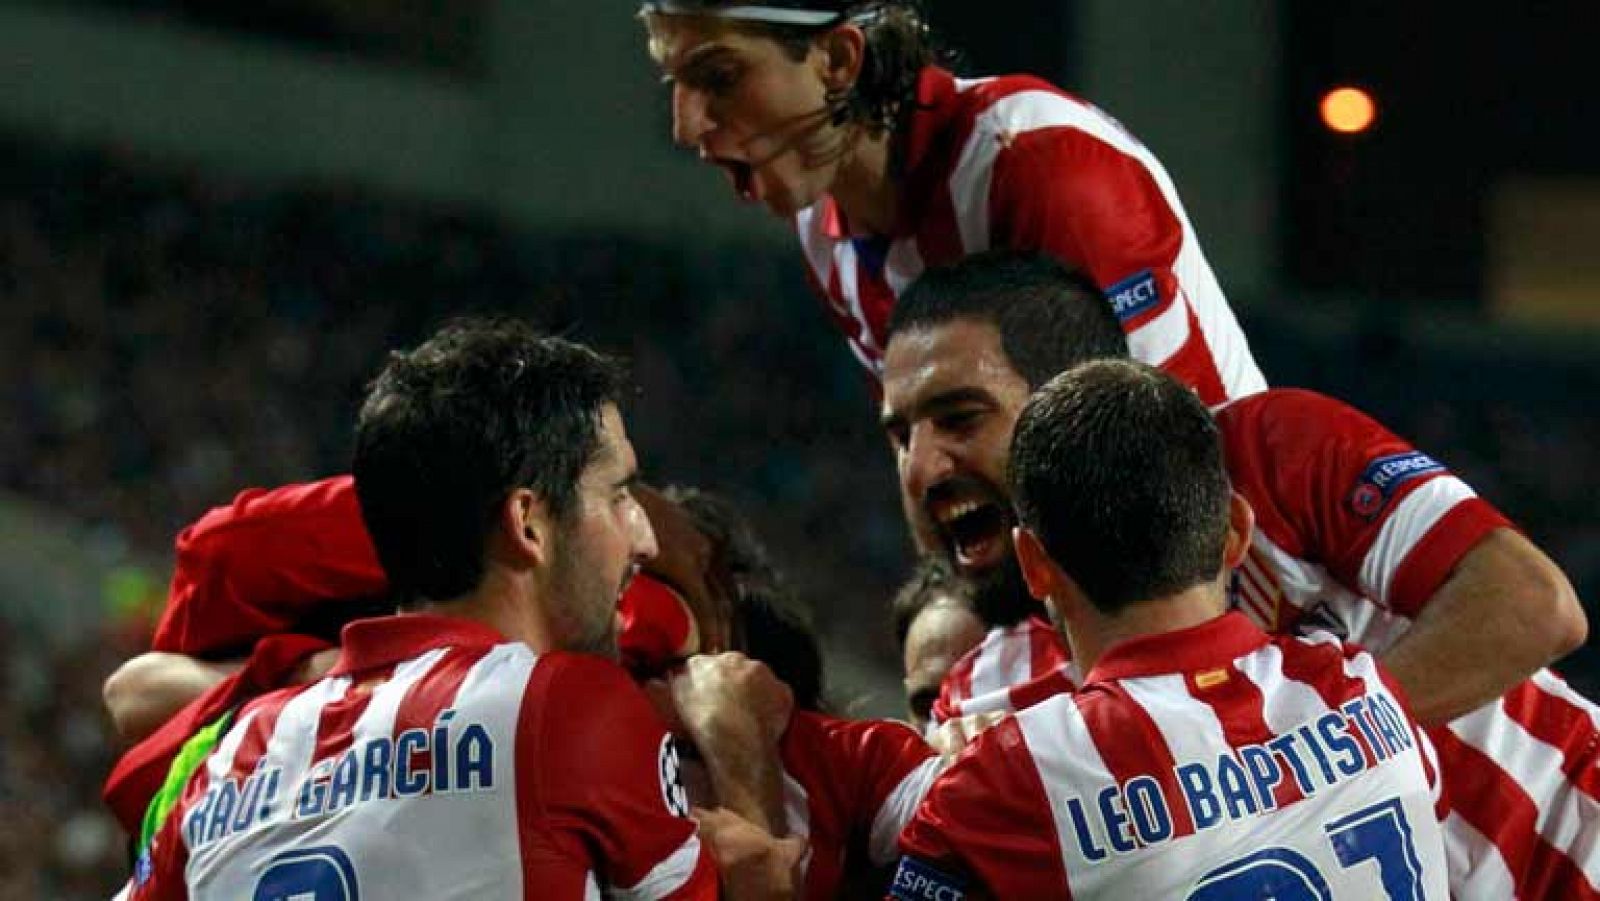  El jugador del Atlético de Madrid Godín ha anotado de cabeza el gol del empate ante el Oporto (1-1), en el minuto 58 de juego, tras una jugada a balón parado 